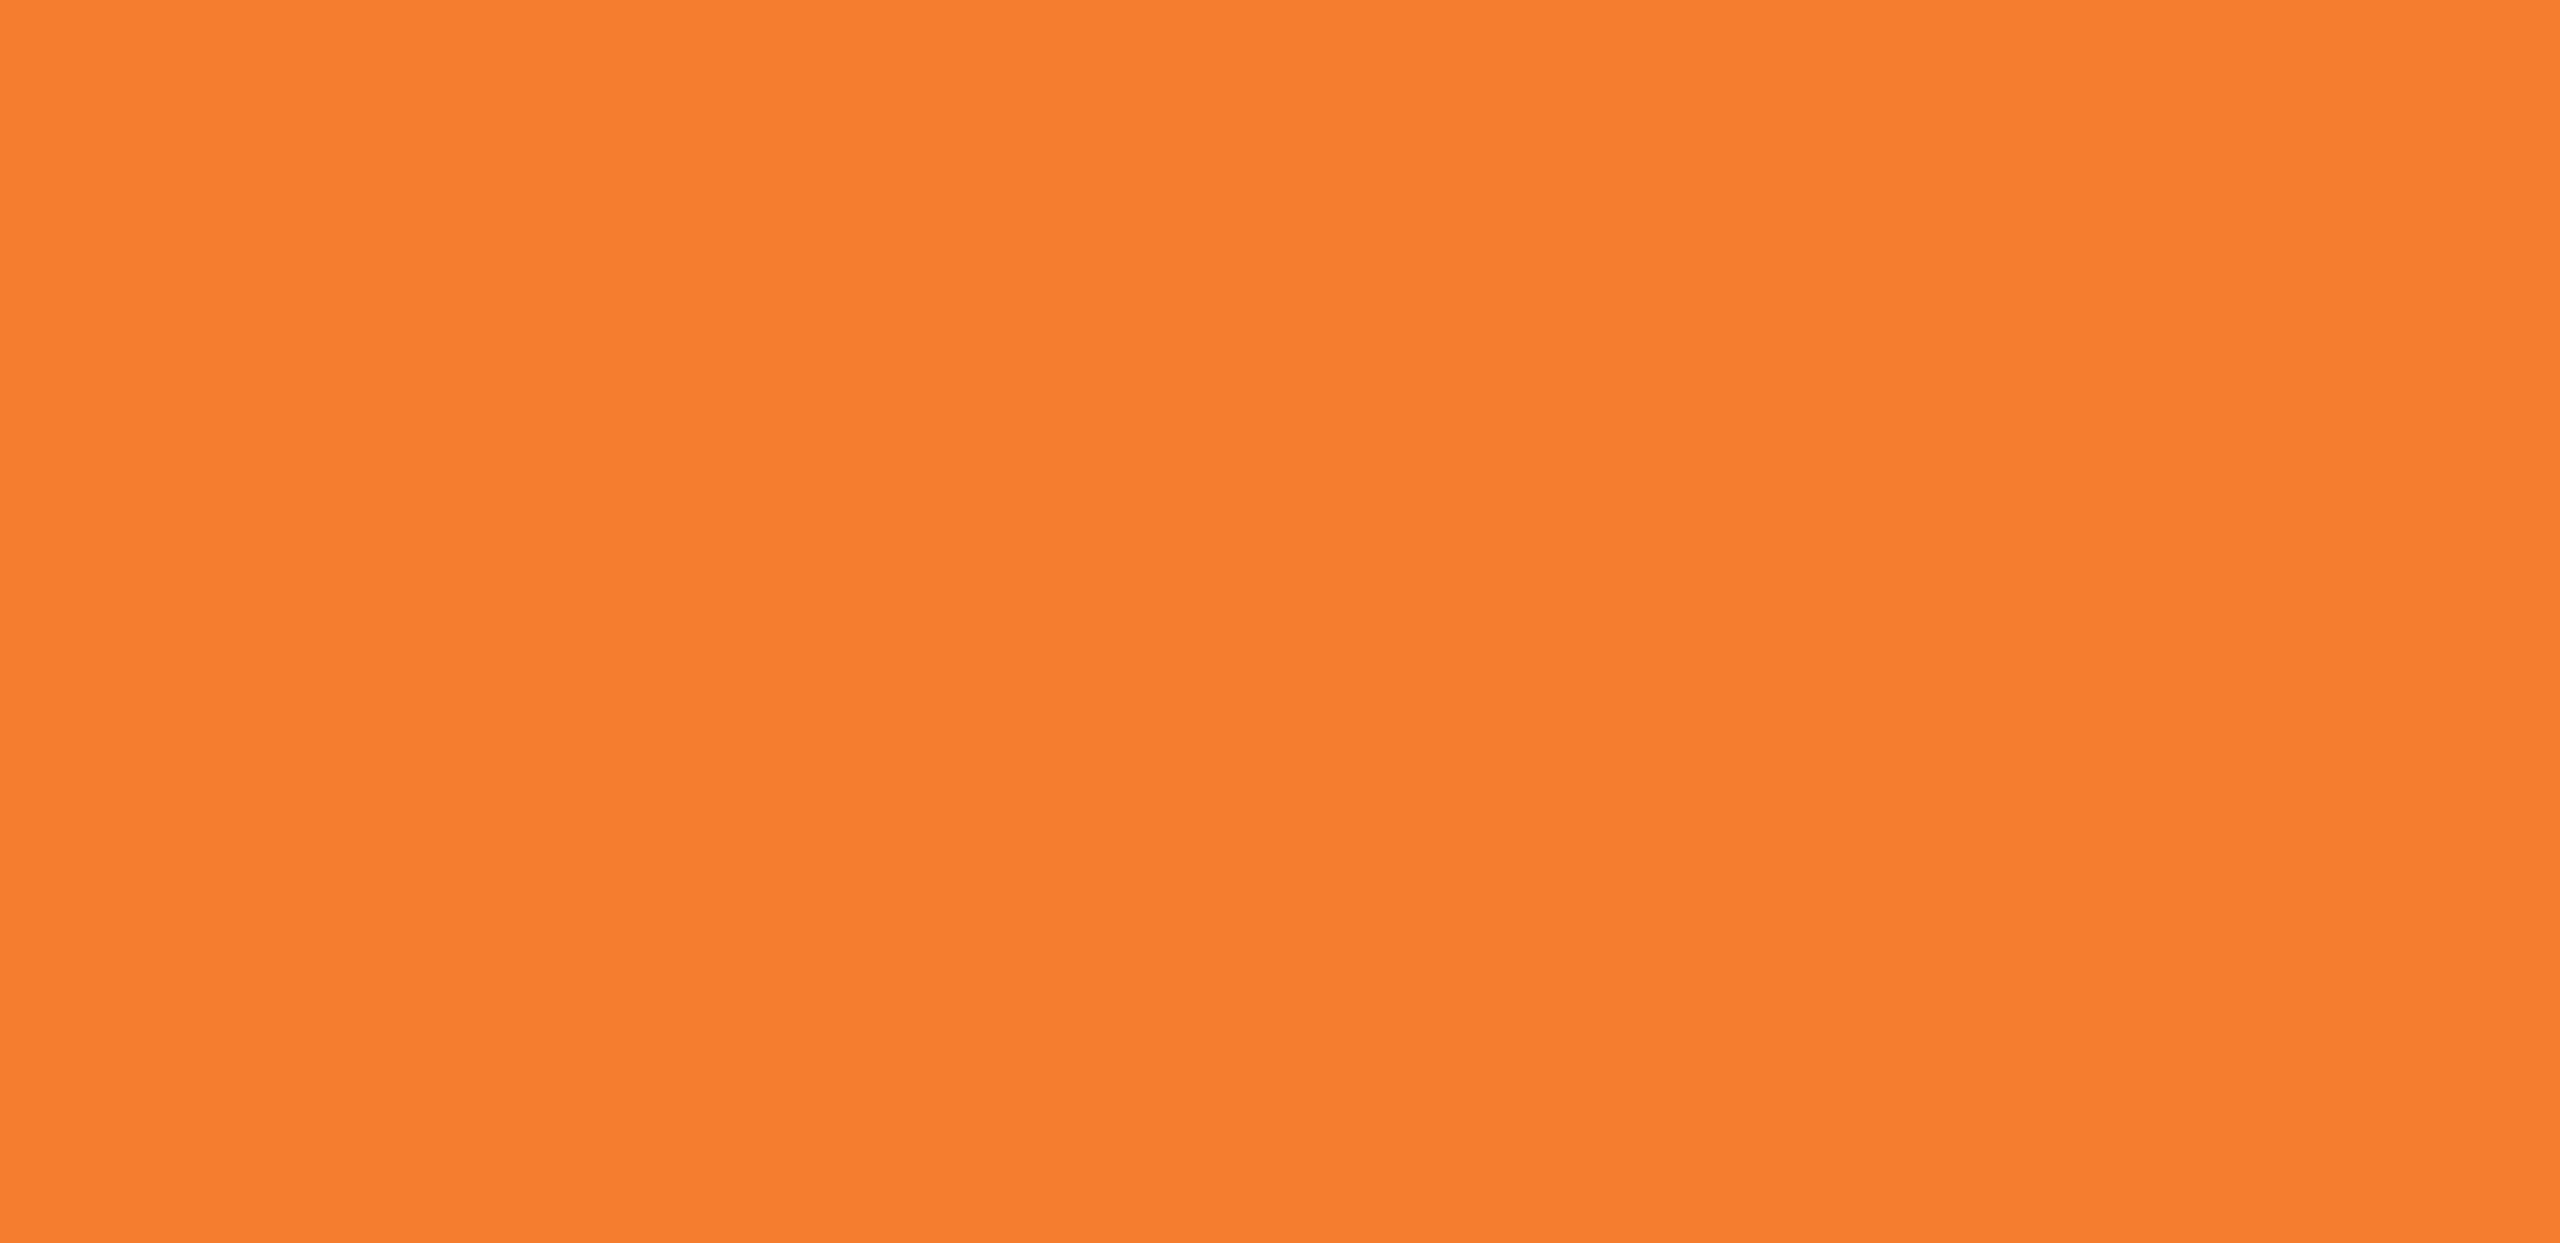 Kamloops Indian Residental School - Orange Shirt Day